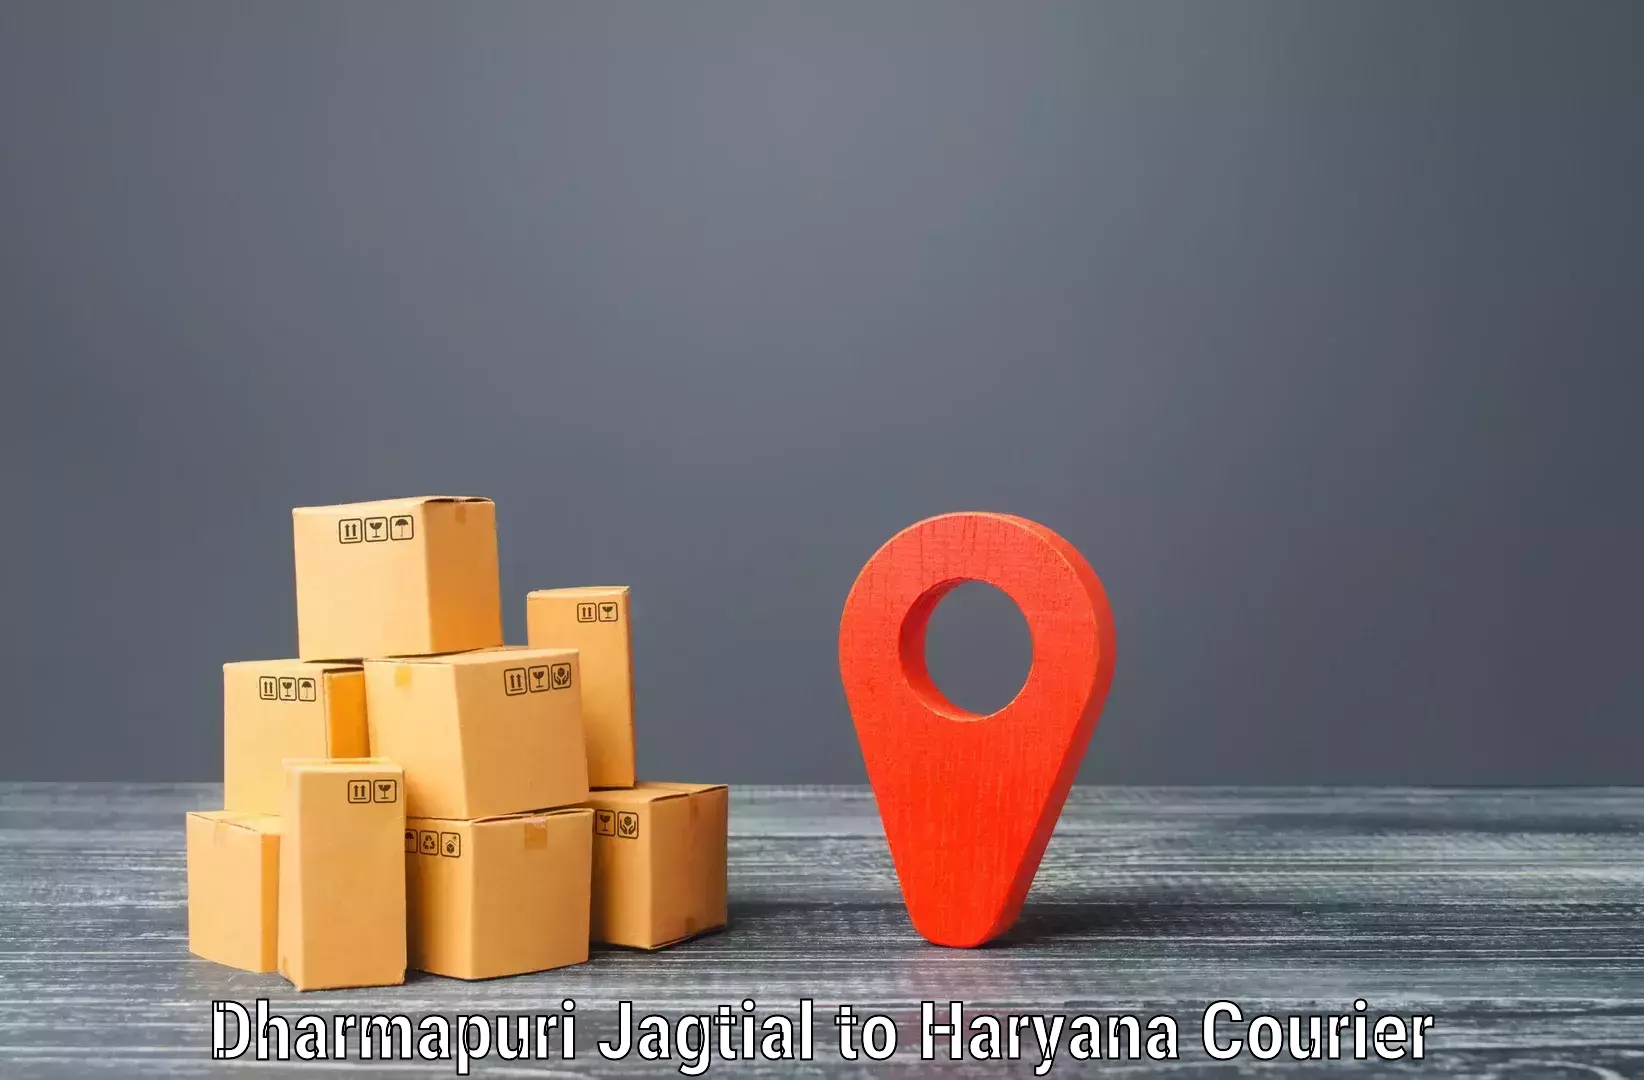 Comprehensive delivery network Dharmapuri Jagtial to Palwal